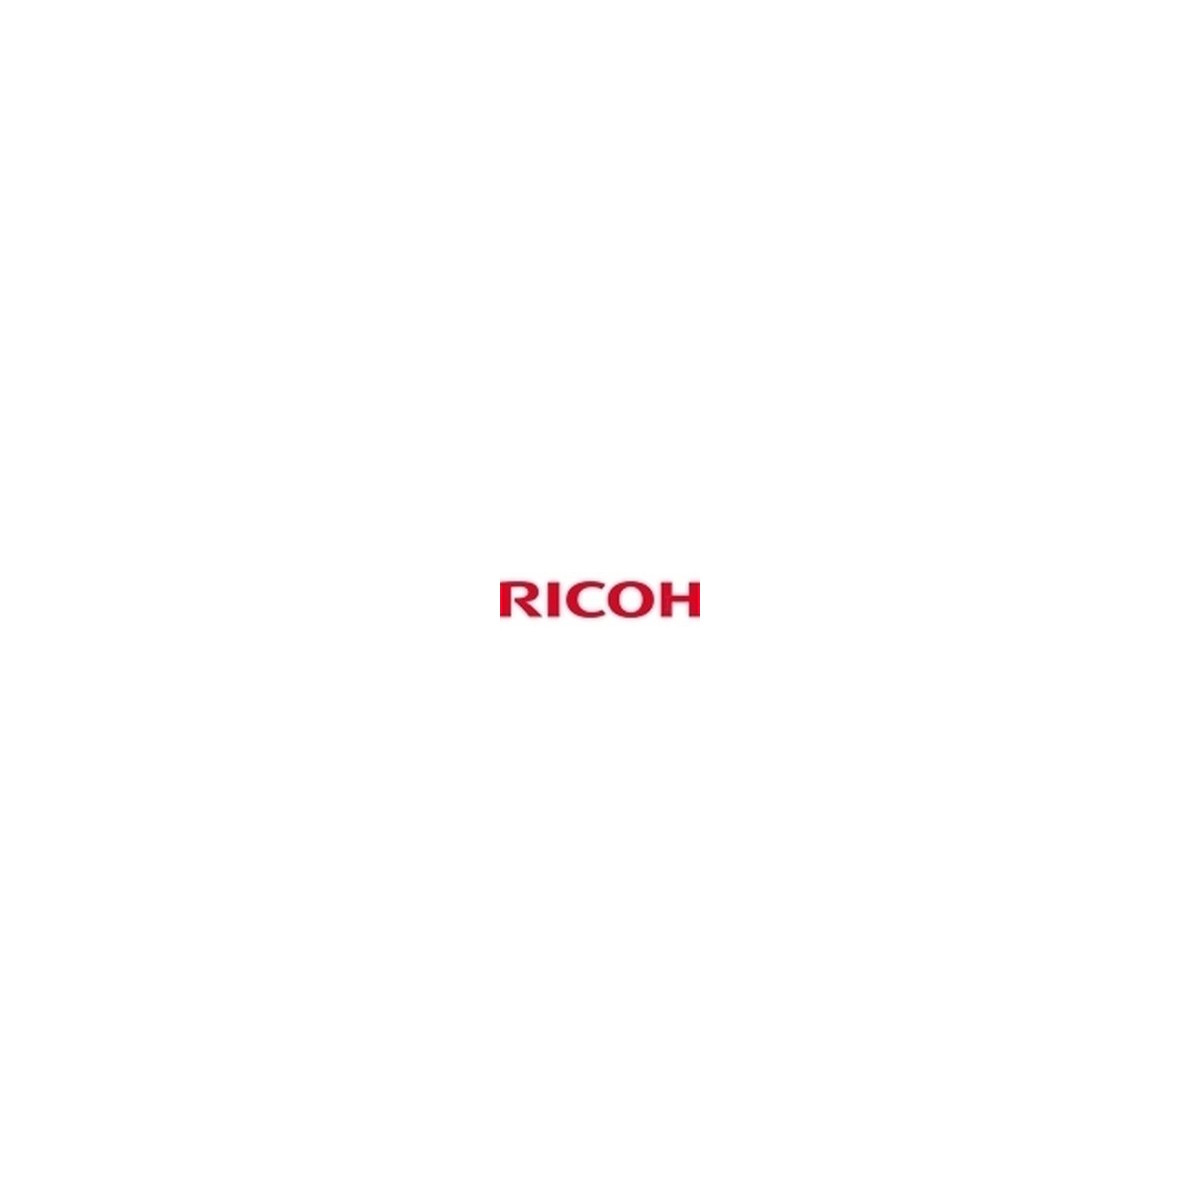 Ricoh Toner 1100W Black - 7000 pages - Black